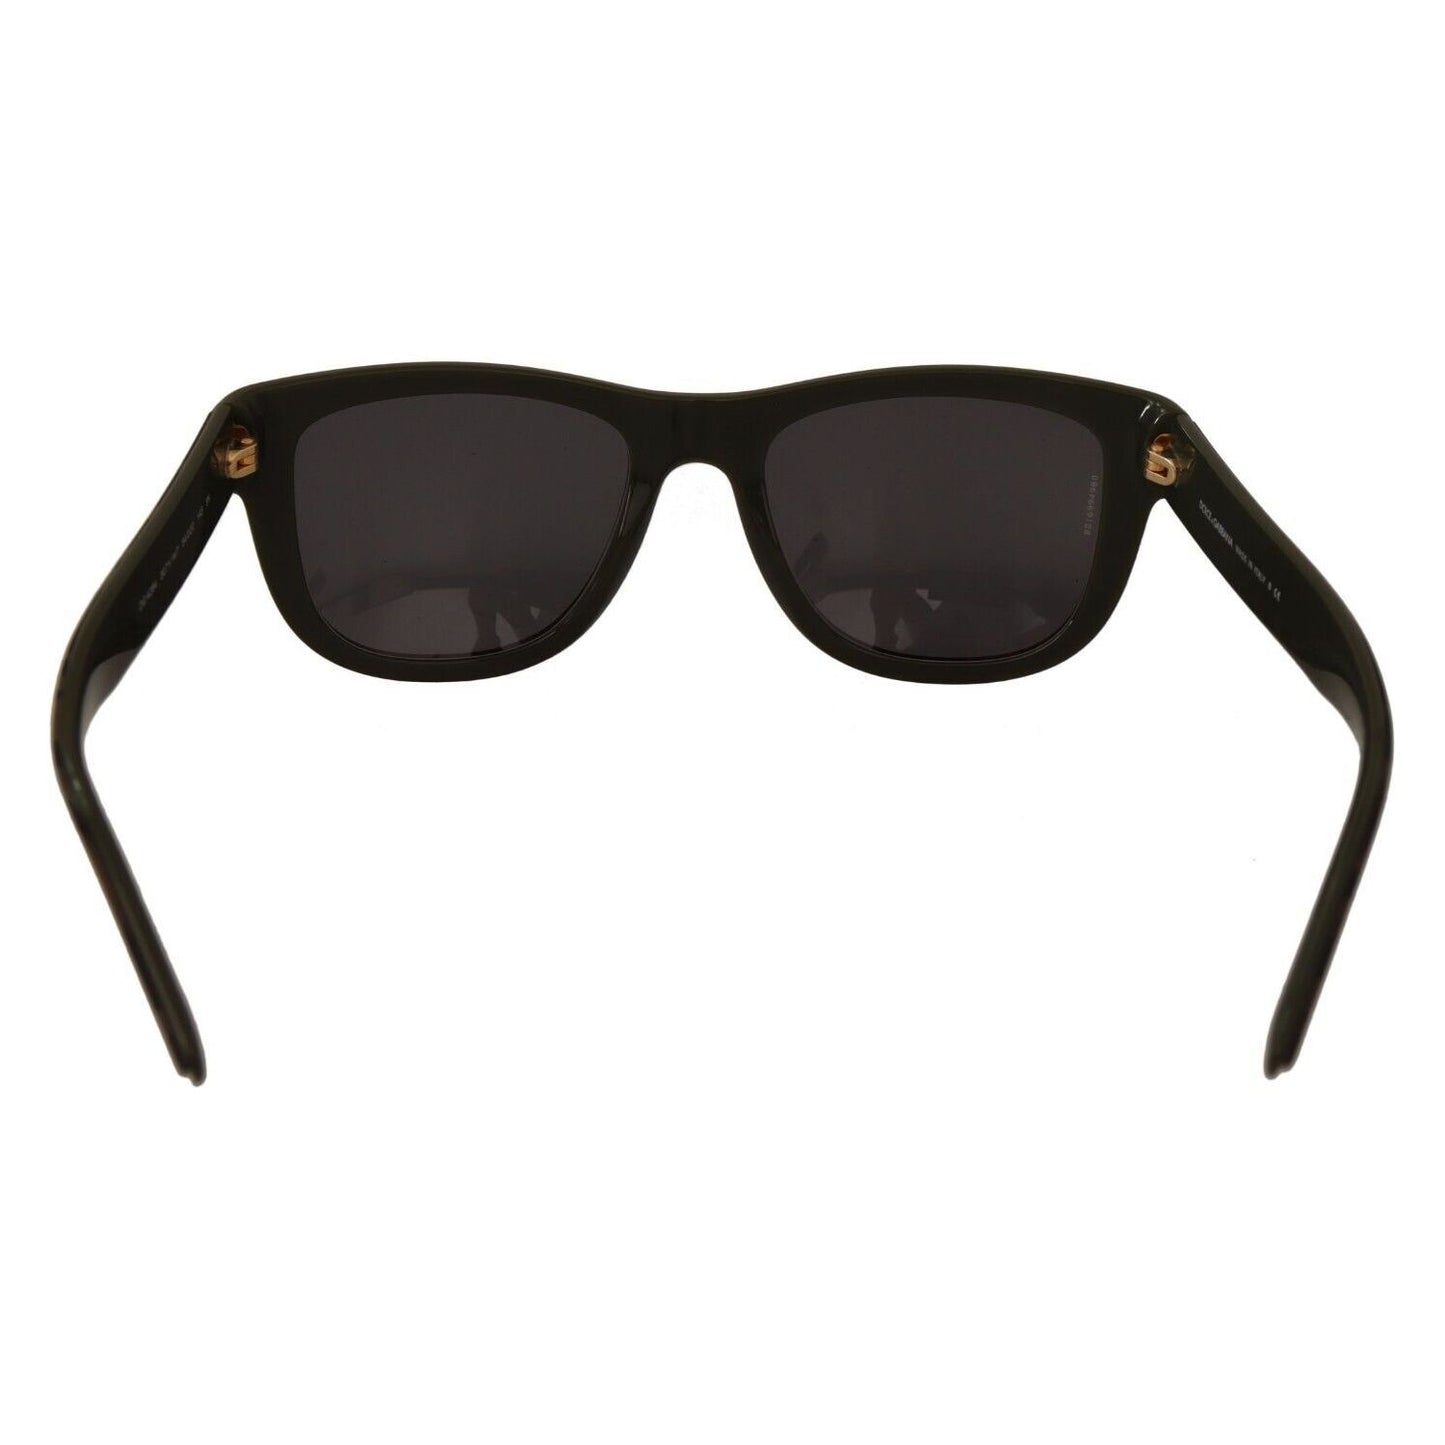 Dolce & Gabbana Chic Black Acetate Designer Sunglasses MAN SUNGLASSES brown-mirror-lens-plastic-full-rim-sunglasses